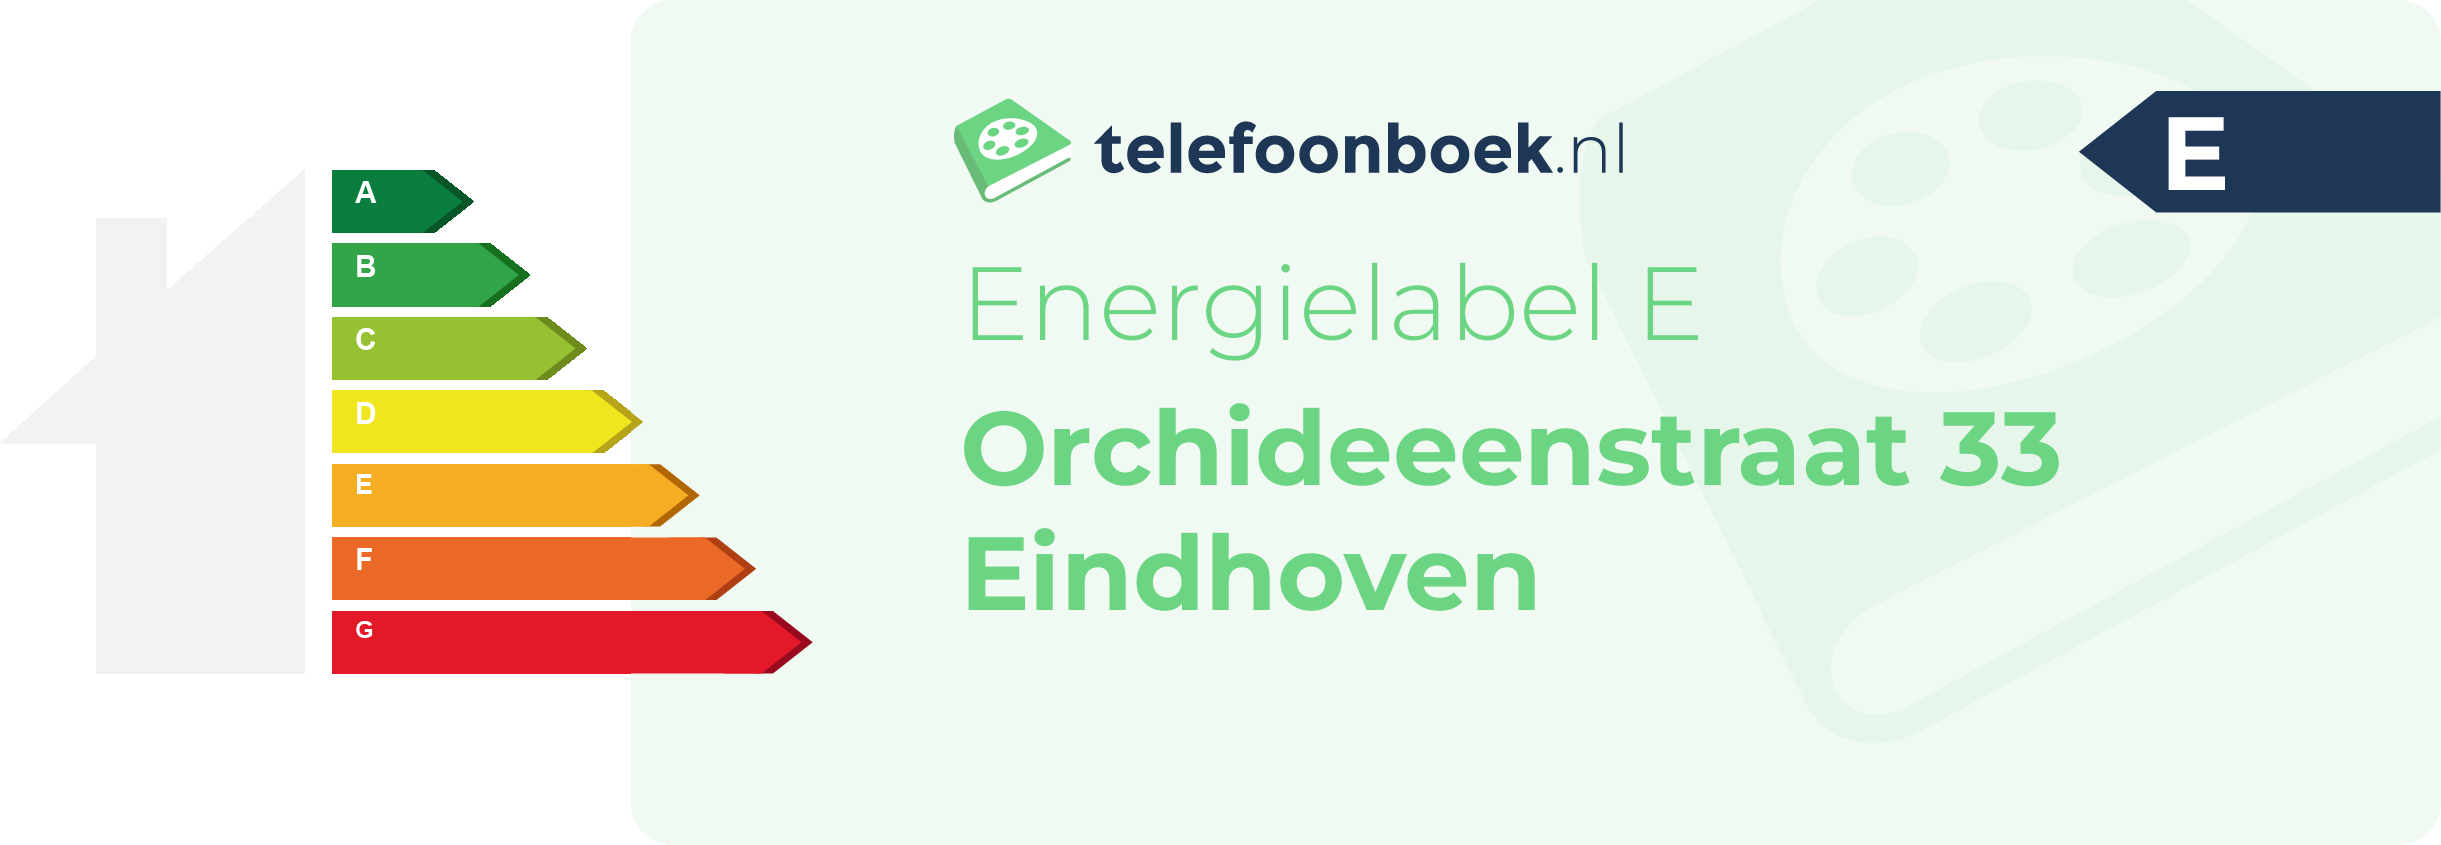 Energielabel Orchideeenstraat 33 Eindhoven